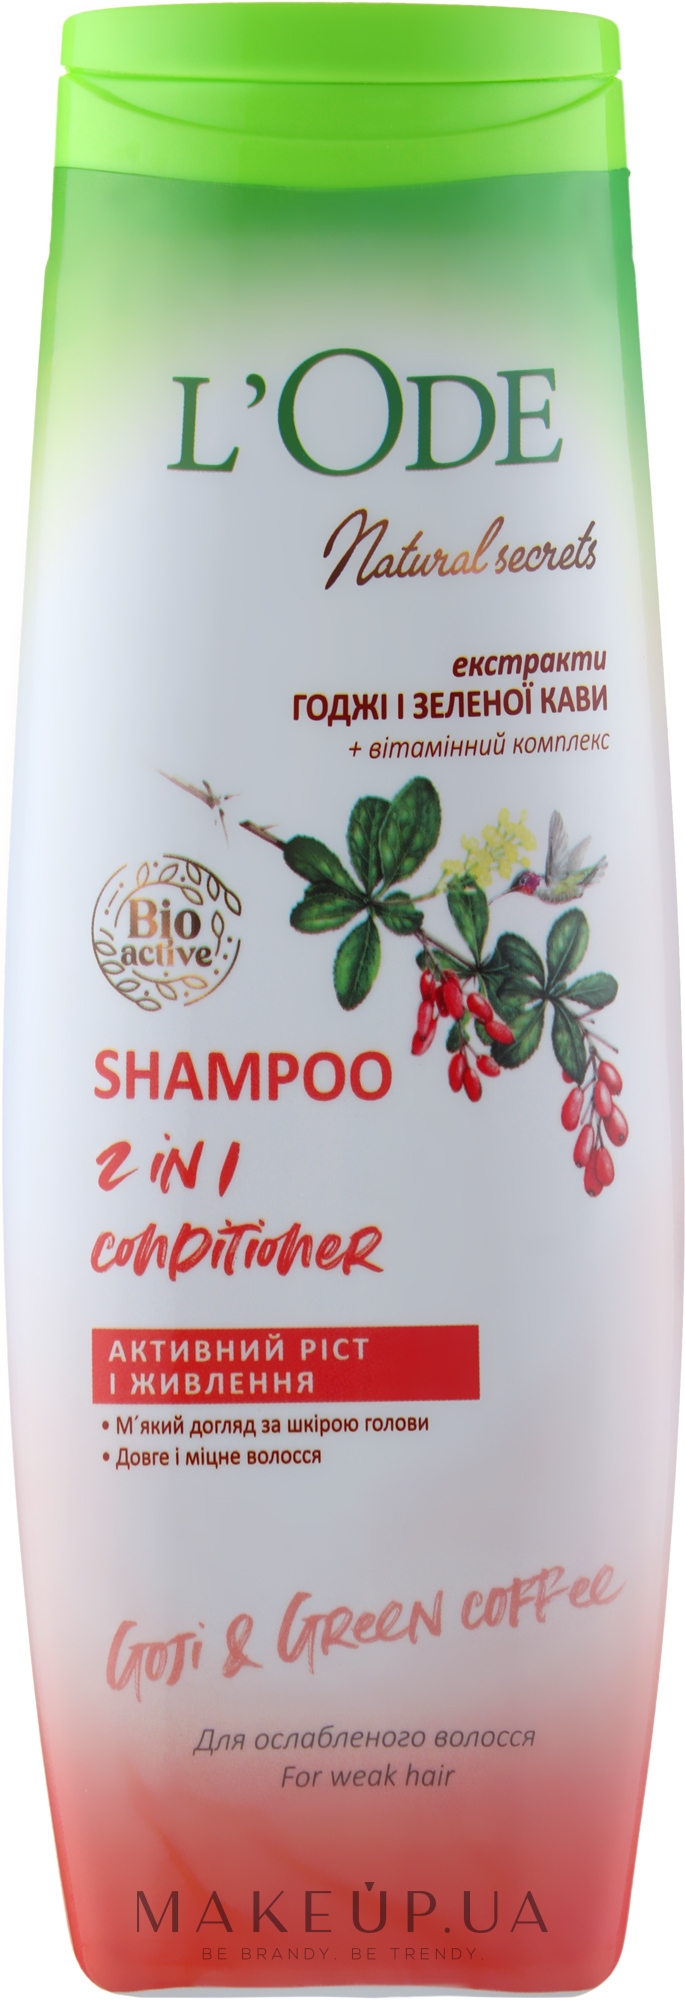 Шампунь-кондиционер "Активный рост и питание" для ослабленных волос - L'Ode Natural Secrets Shampoo 2 In 1 Conditioner Goji & Green Coffee — фото 400ml